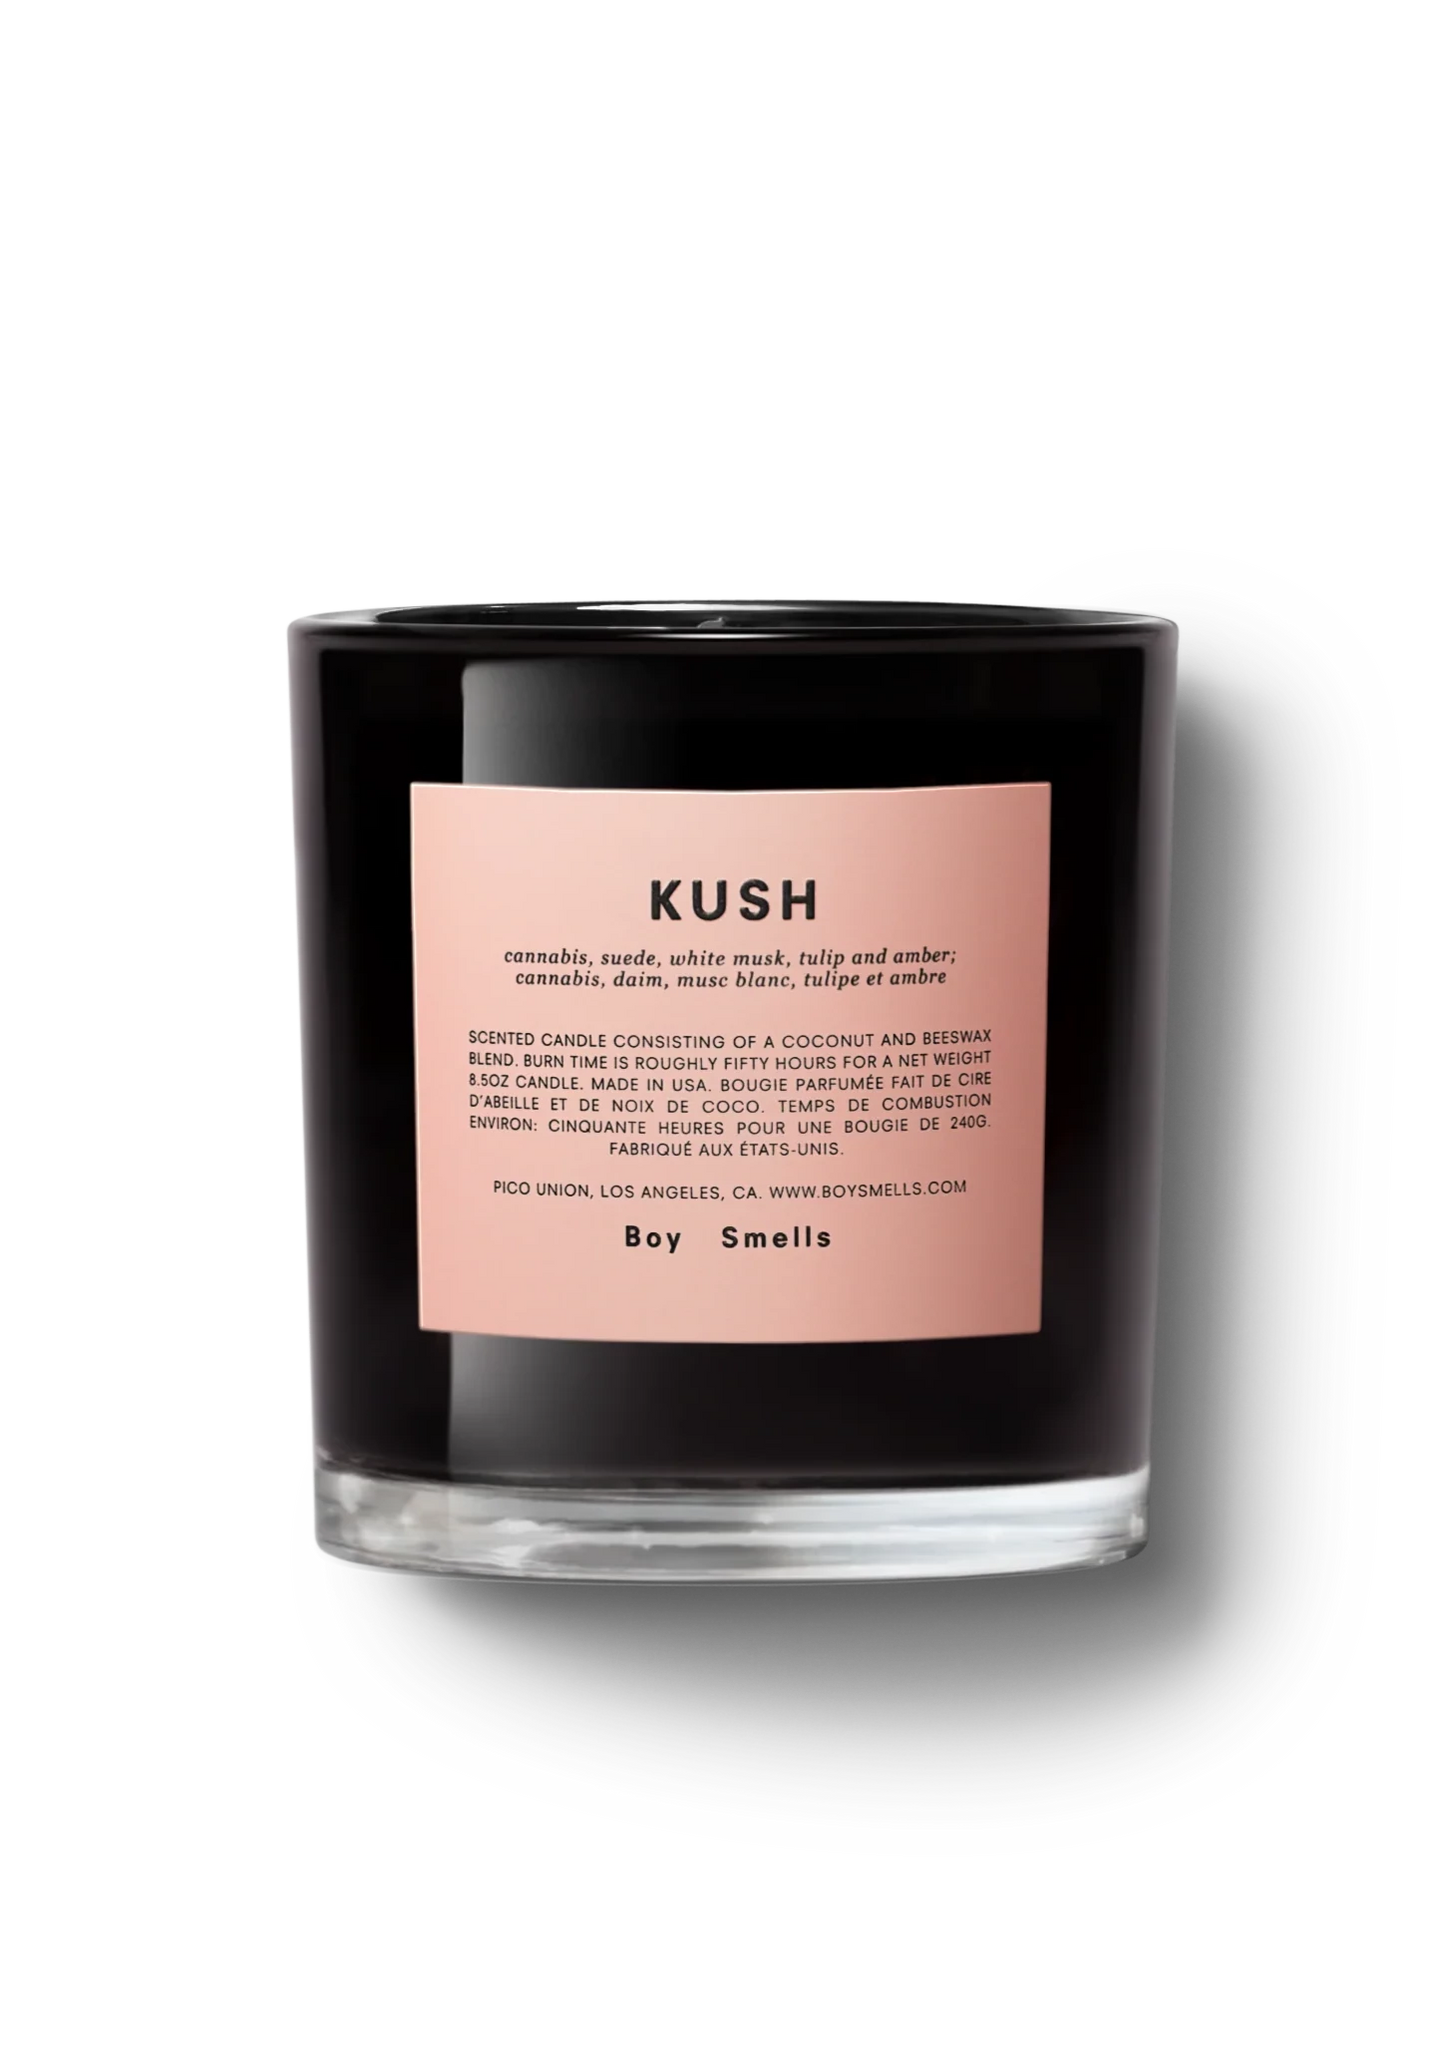 Kush Candle // Botanical + Floral